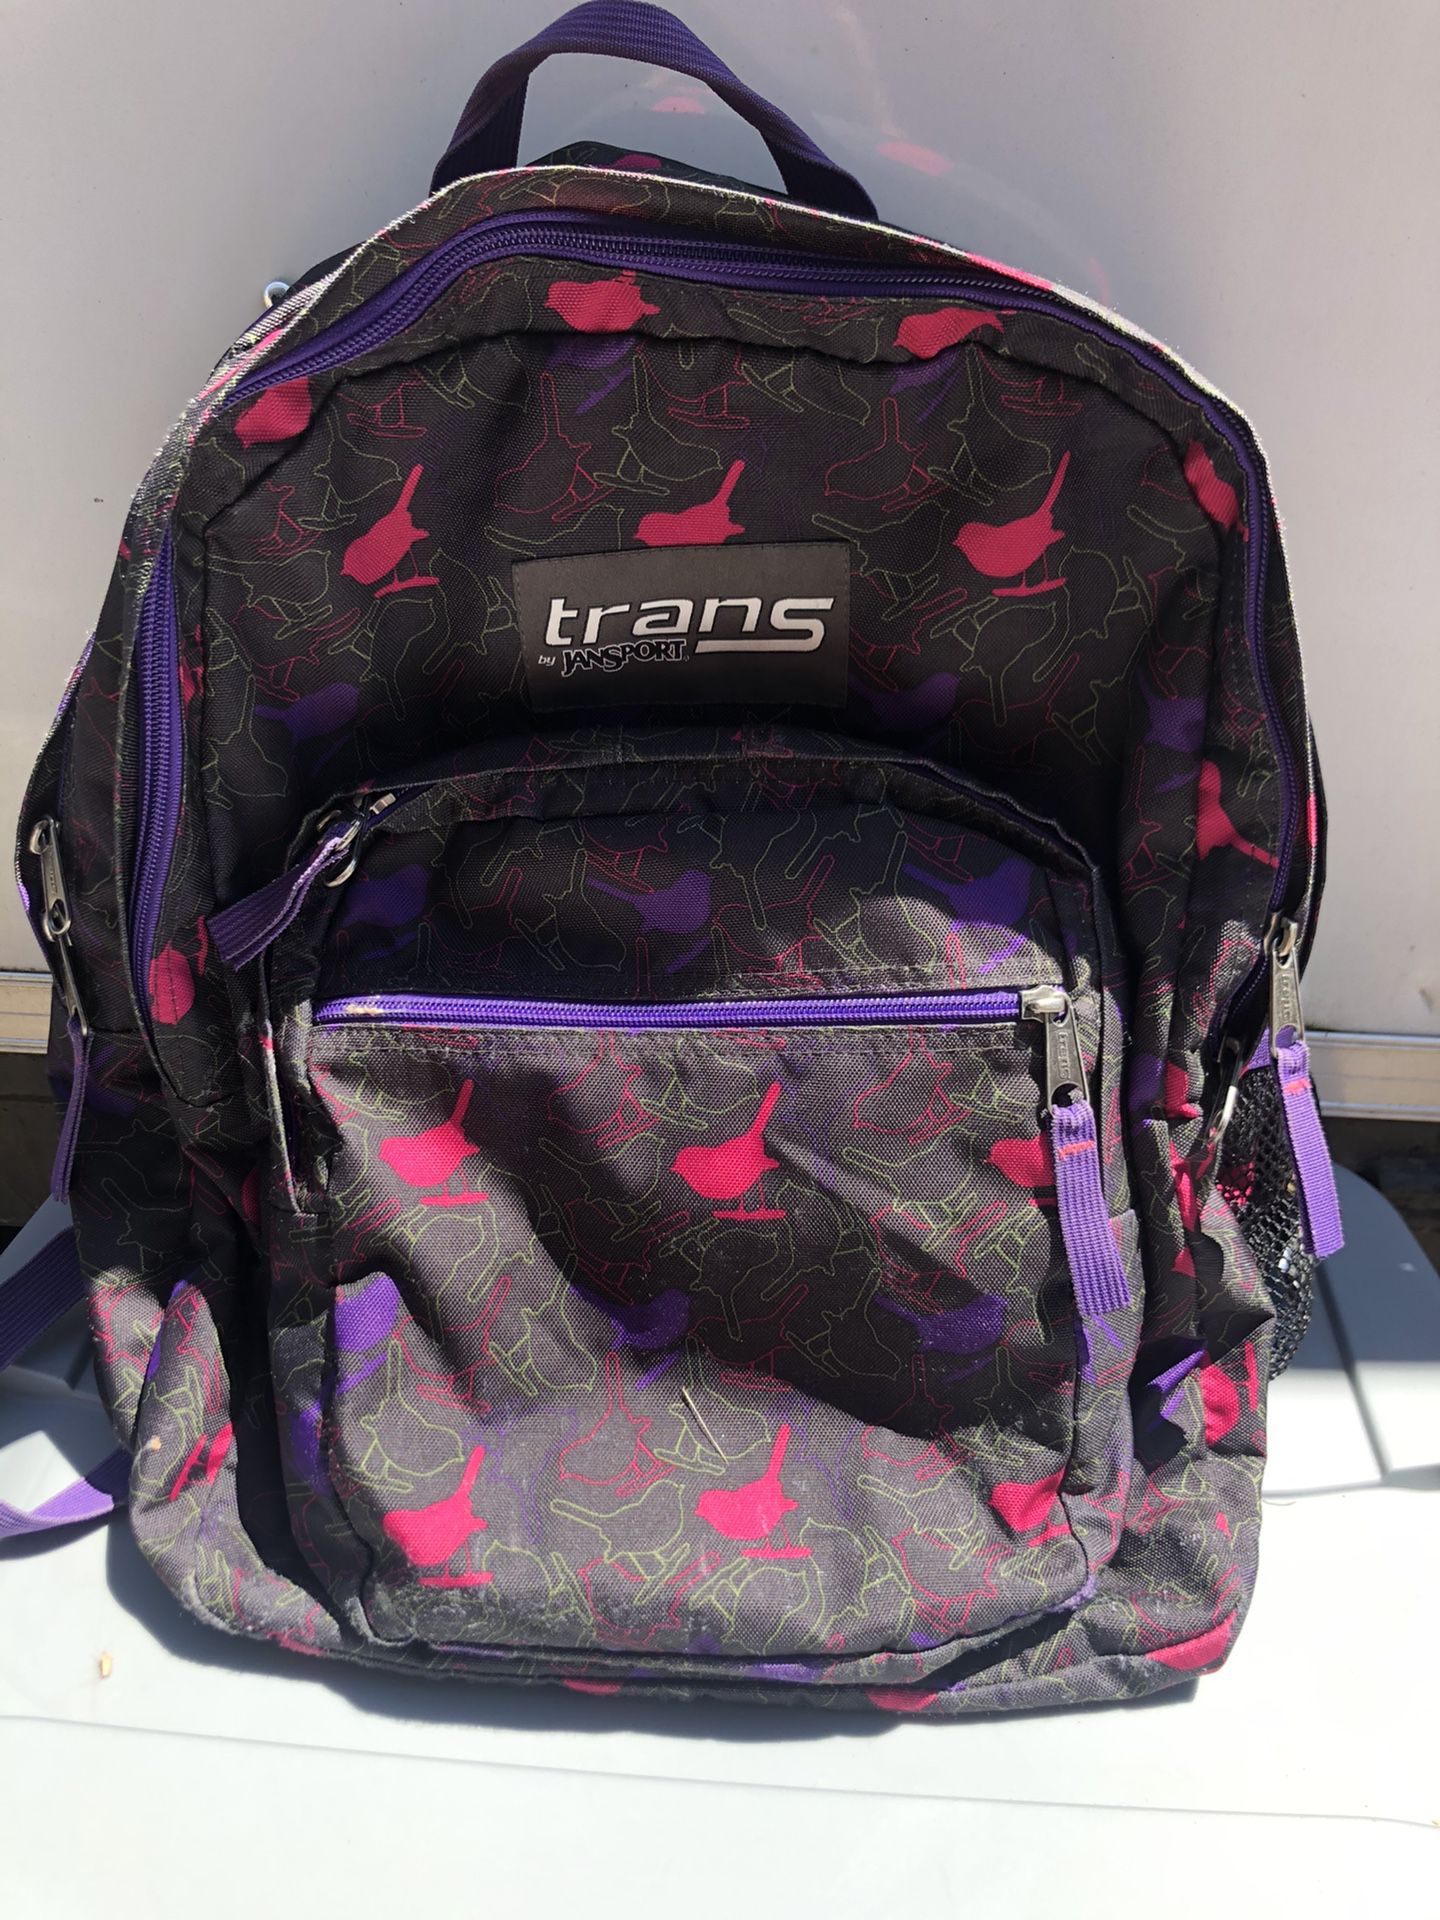 Trans Jansport backpack!